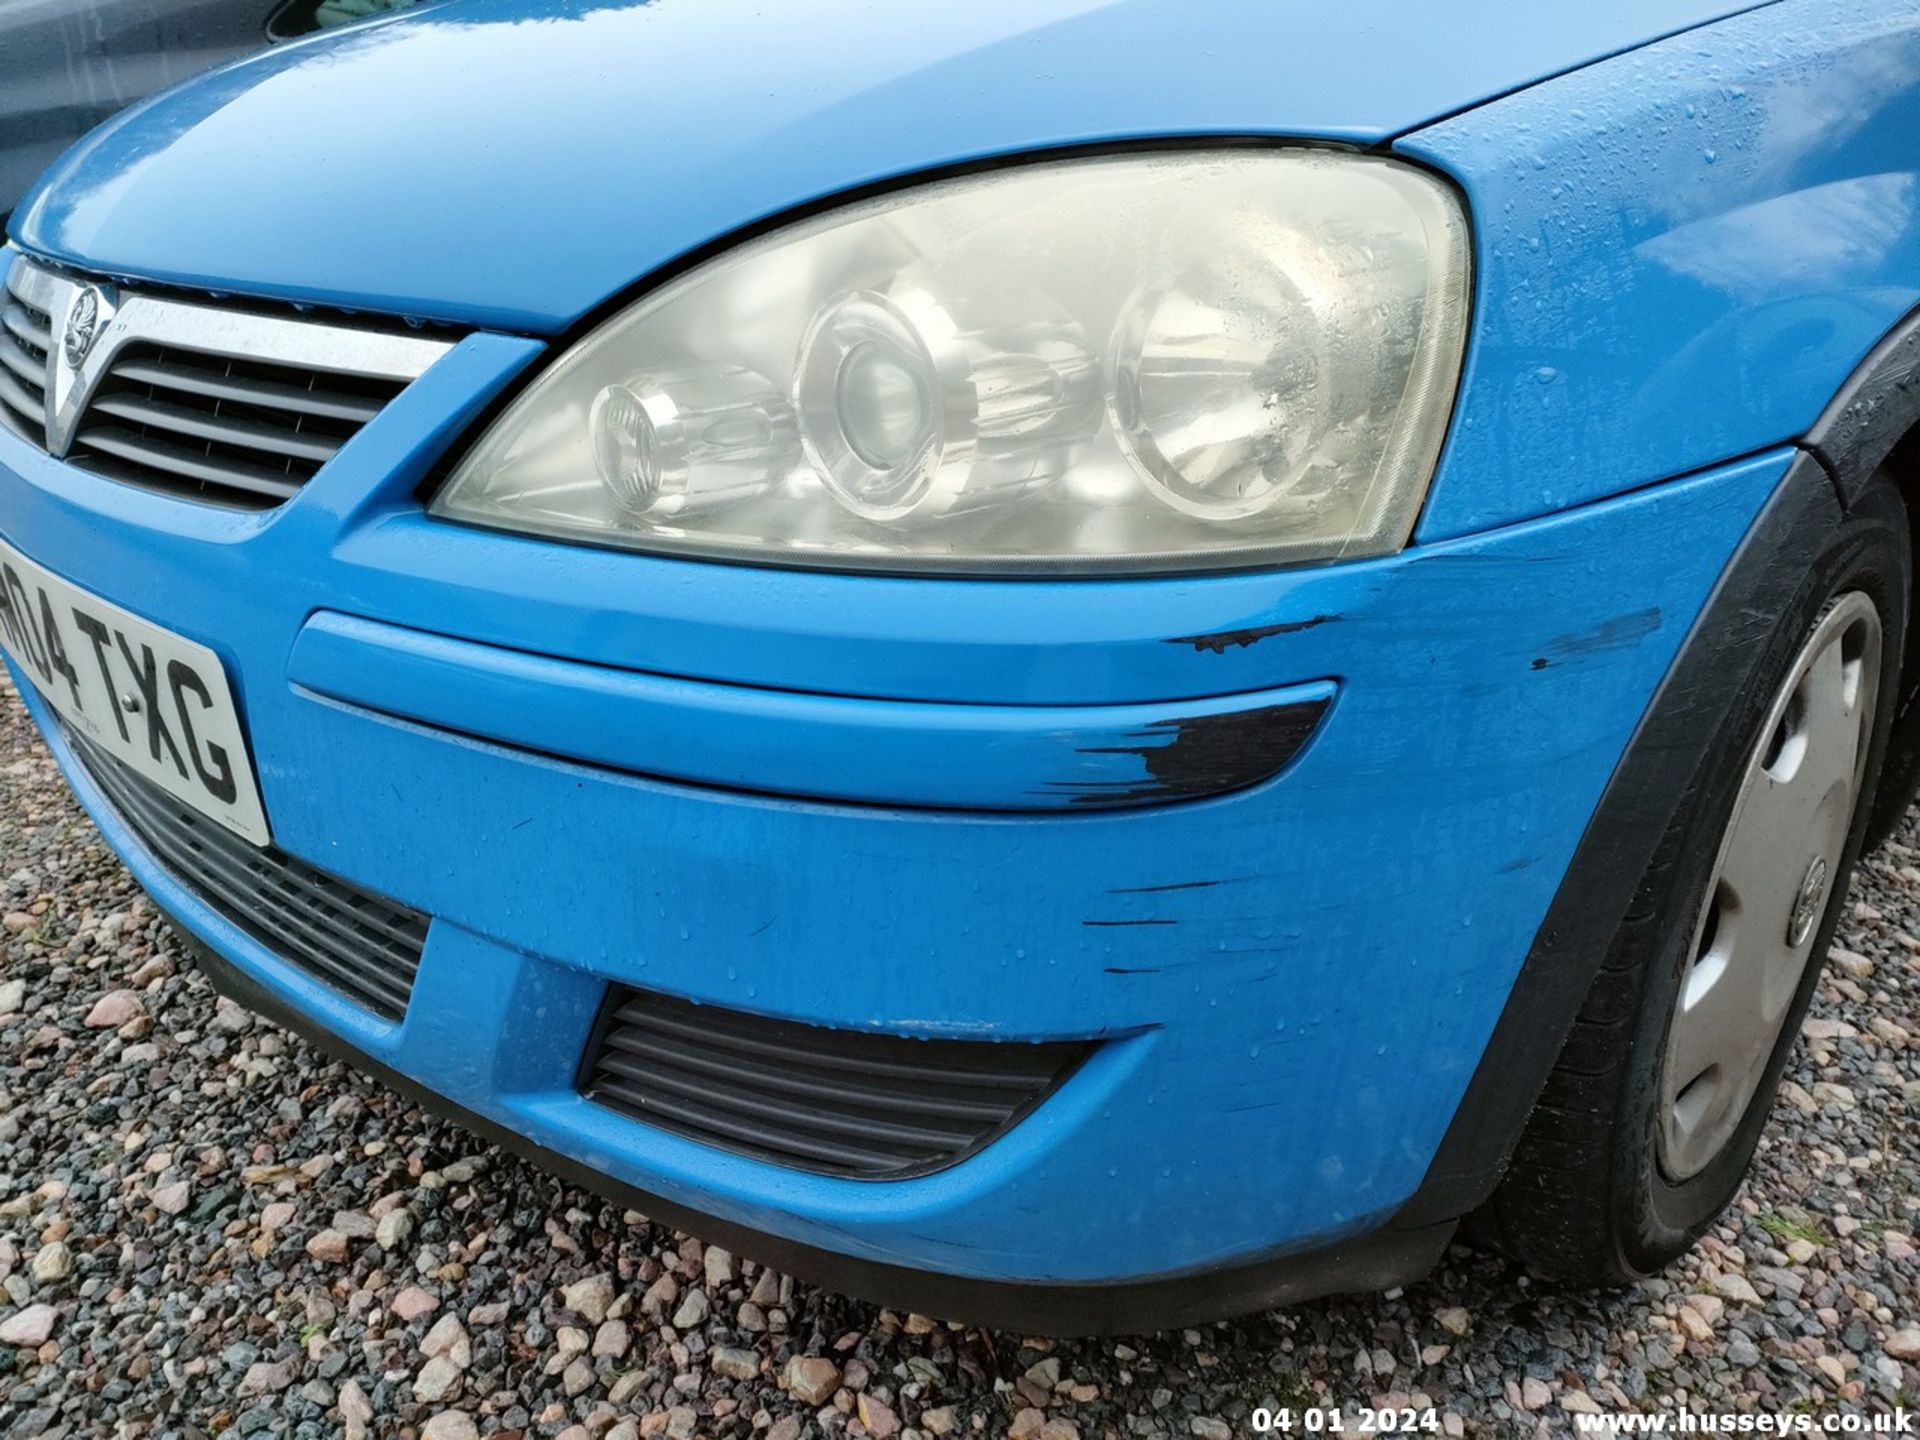 04/04 VAUXHALL CORSA DESIGN 16V - 1199cc 5dr Hatchback (Blue, 96k) - Image 11 of 38